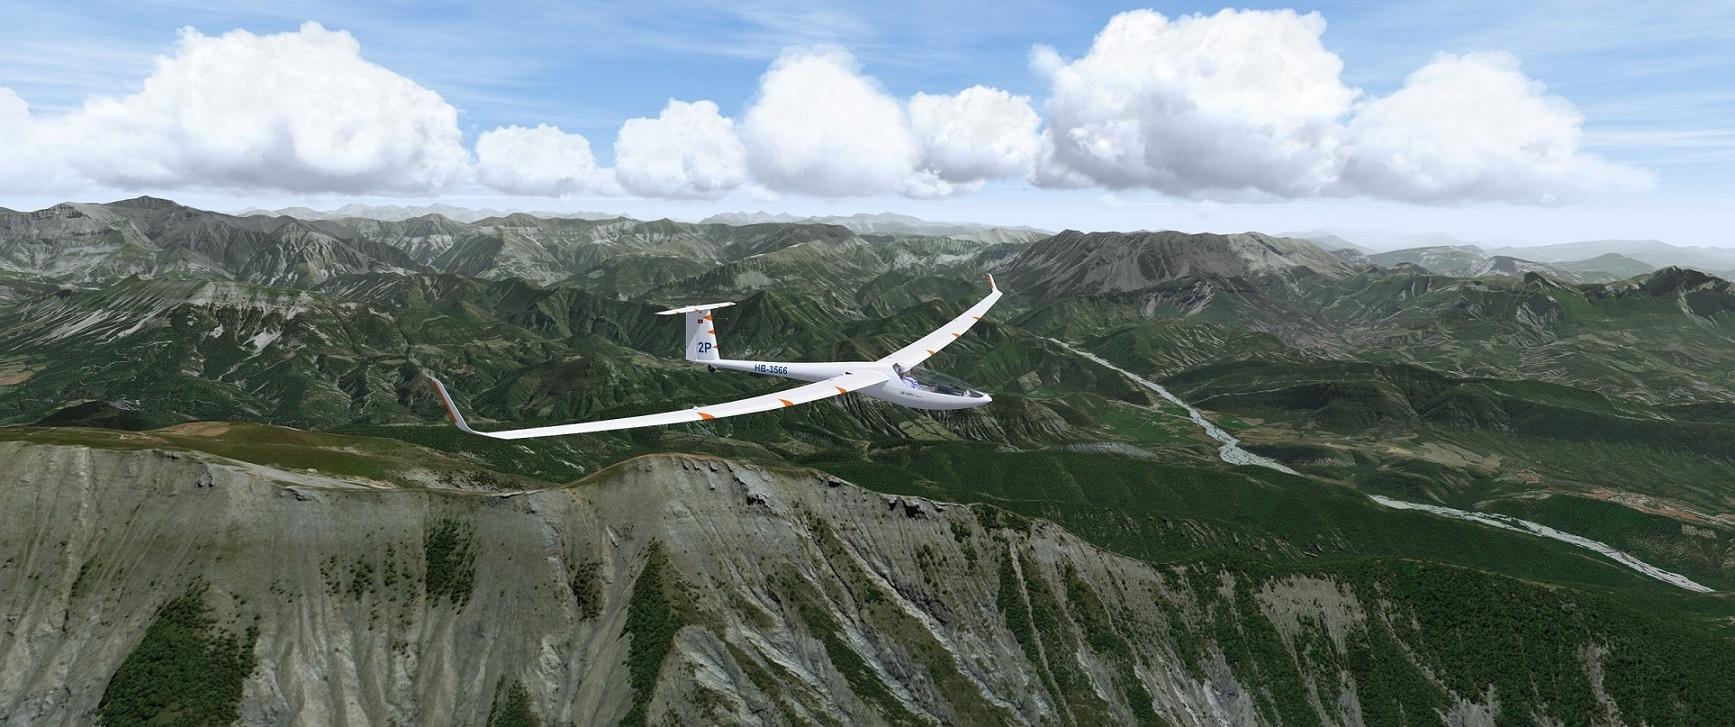 condor glider simulator download